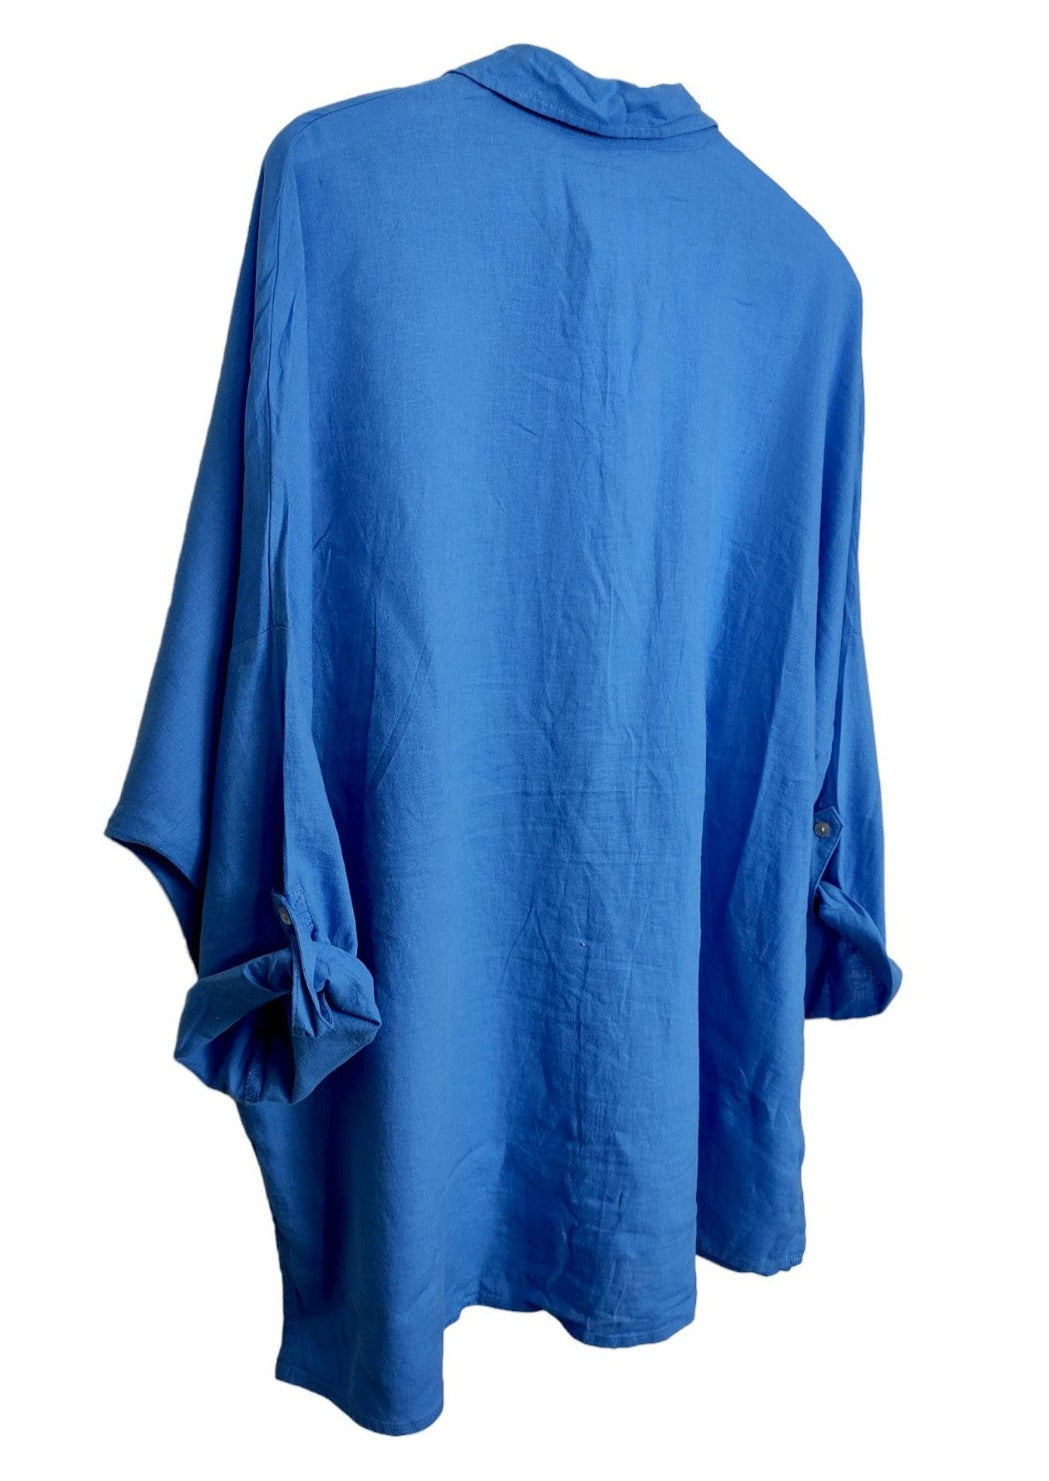 Γυναικείο Πουκάμισο σε Γαλάζιο Χρώμα (2XL)